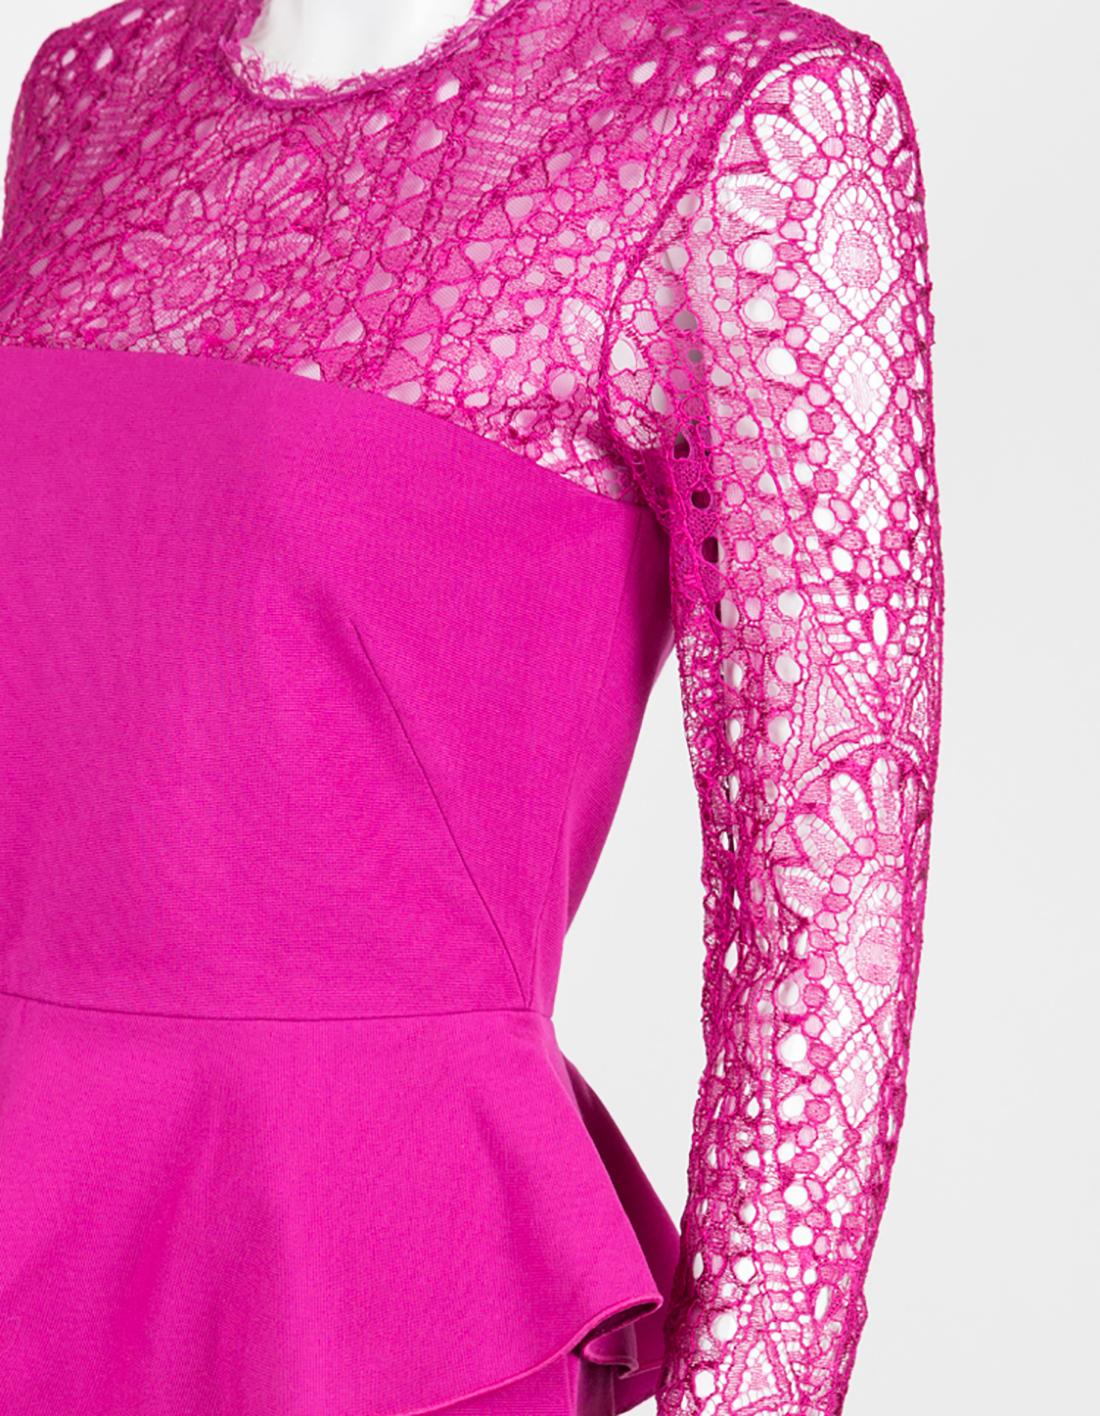 pucci pink dress